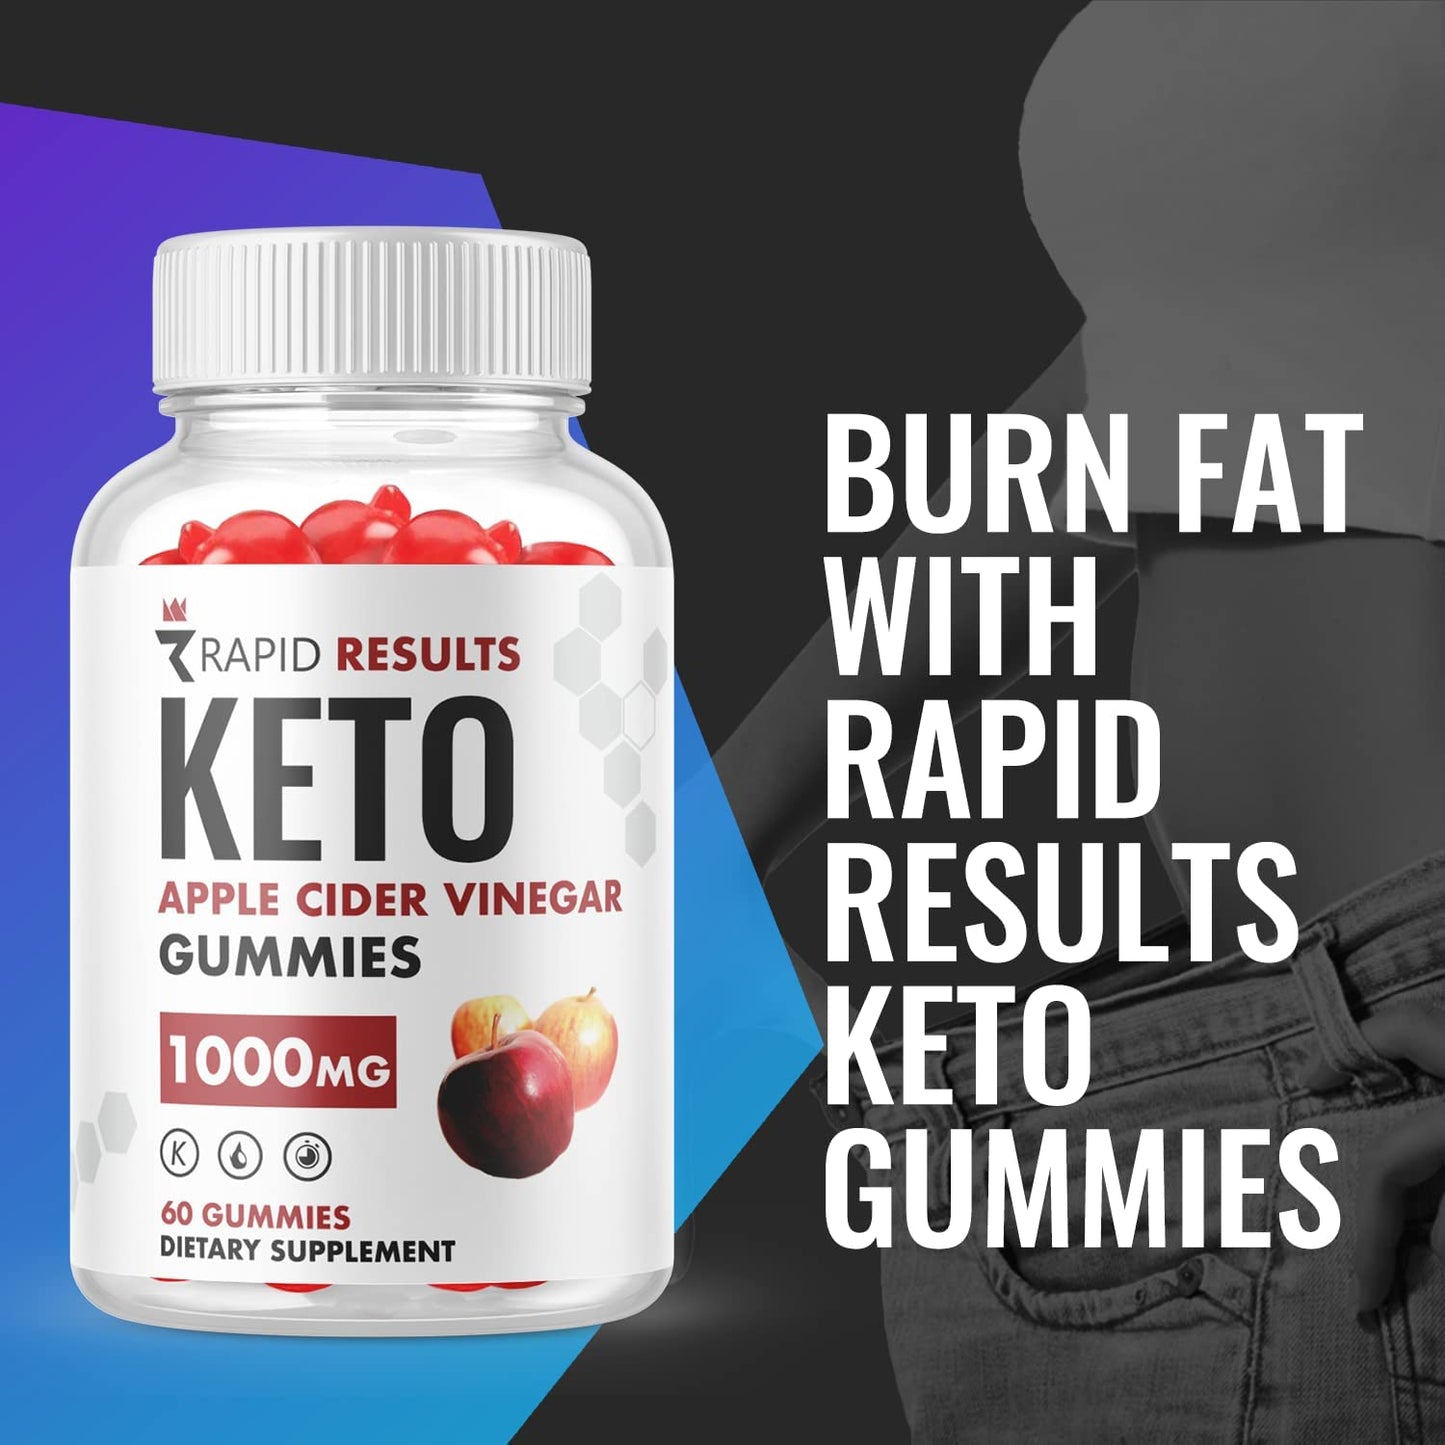 Rapid Results Keto ACV Gummies